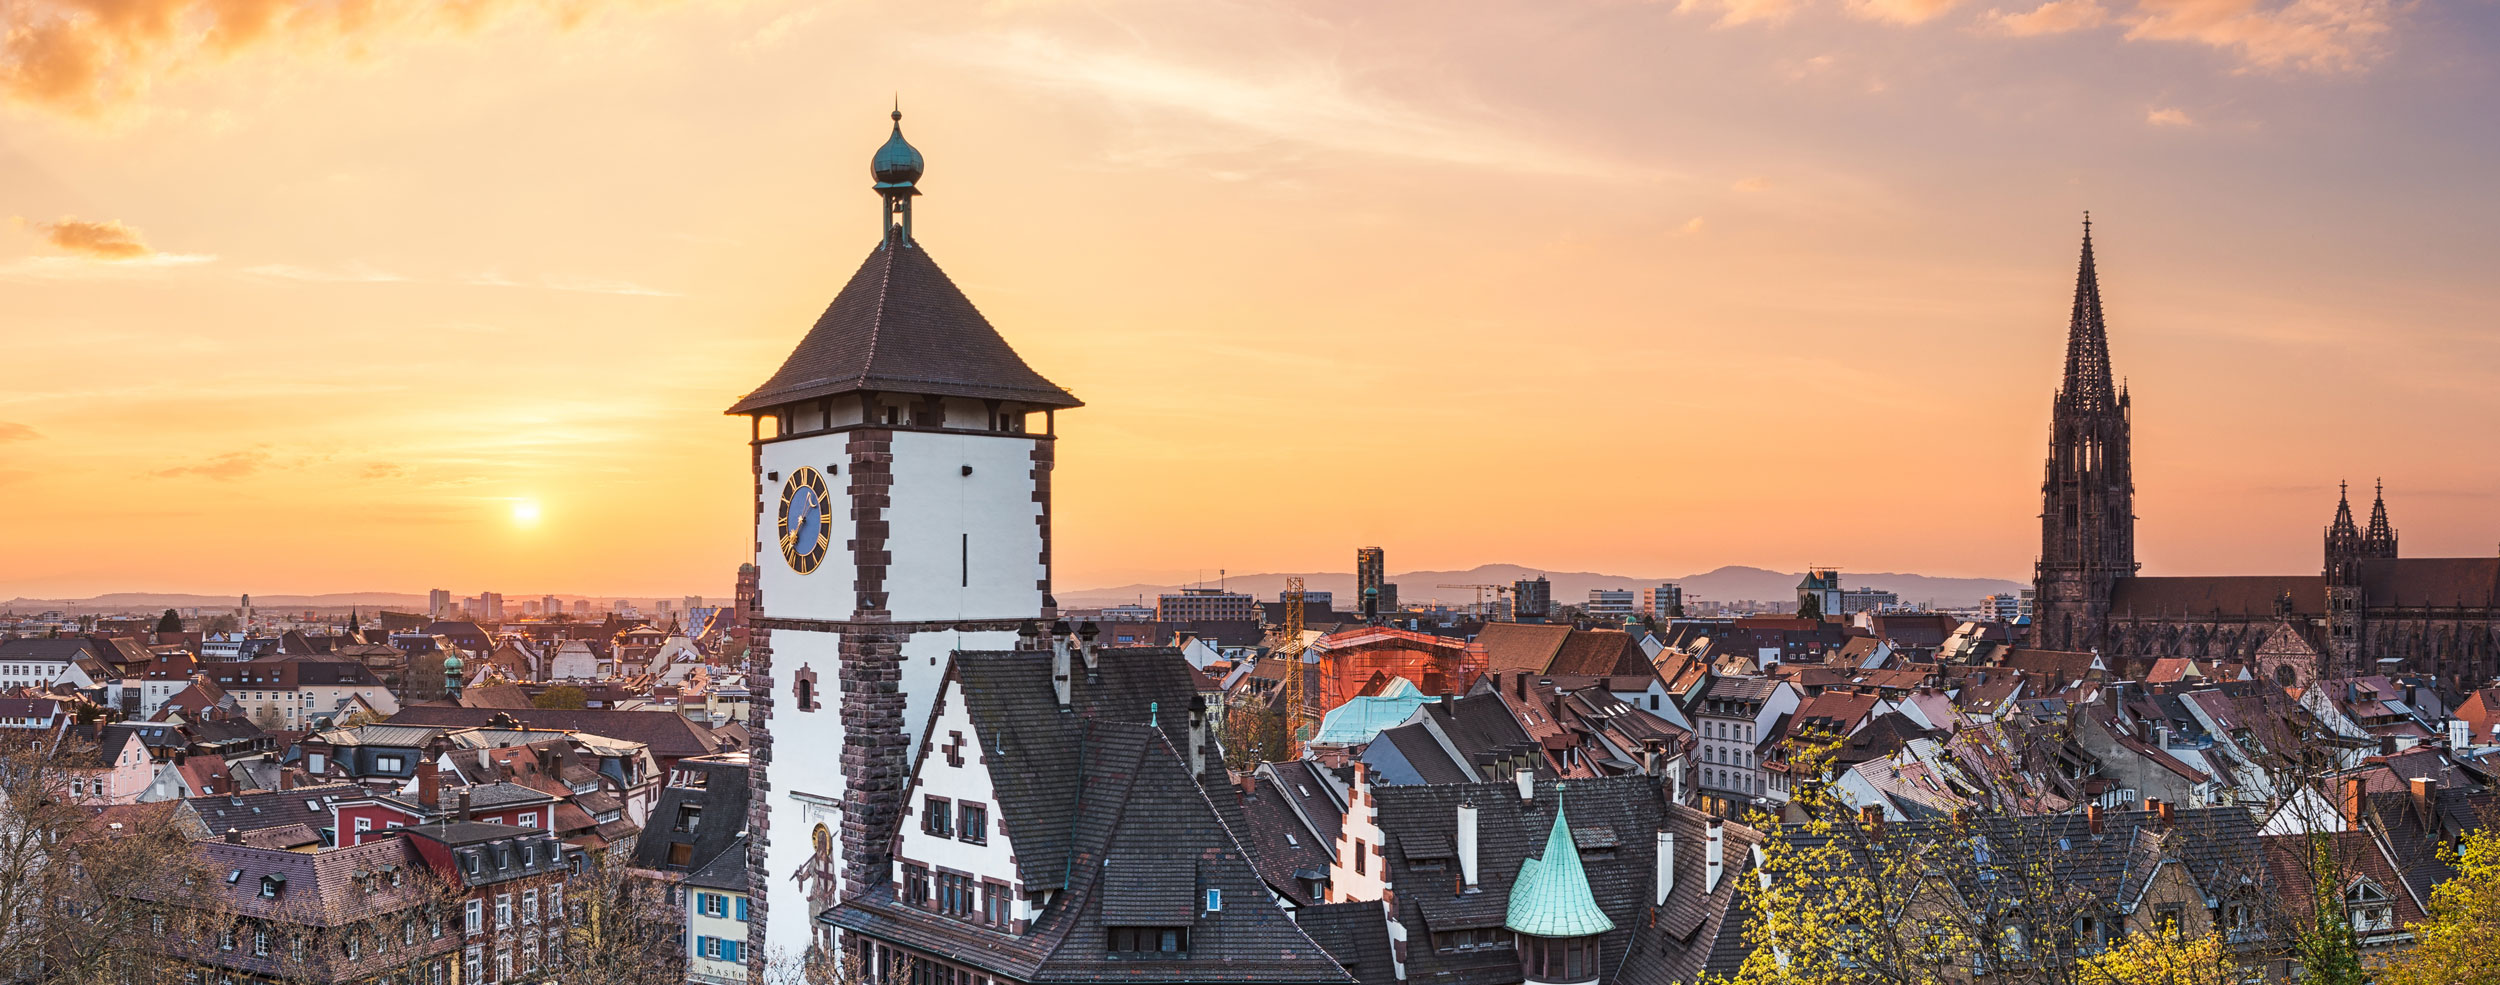 Immobilienbewertung - Immobilien bewerten - Freiburg